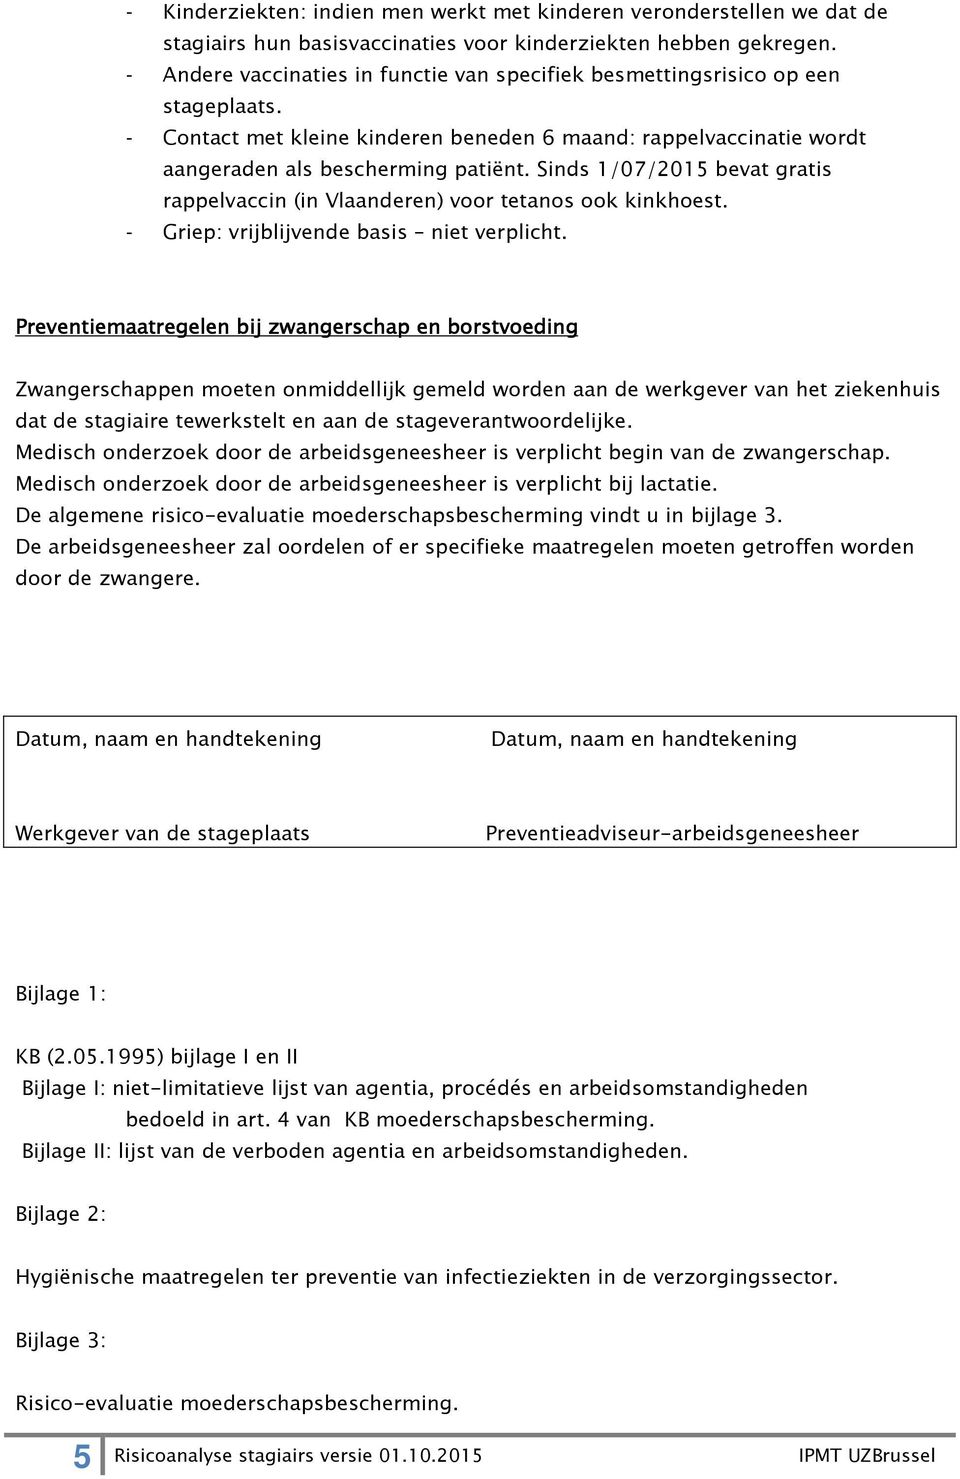 Sinds 1/07/2015 bevat gratis rappelvaccin (in Vlaanderen) voor tetanos ook kinkhoest. - Griep: vrijblijvende basis niet verplicht.